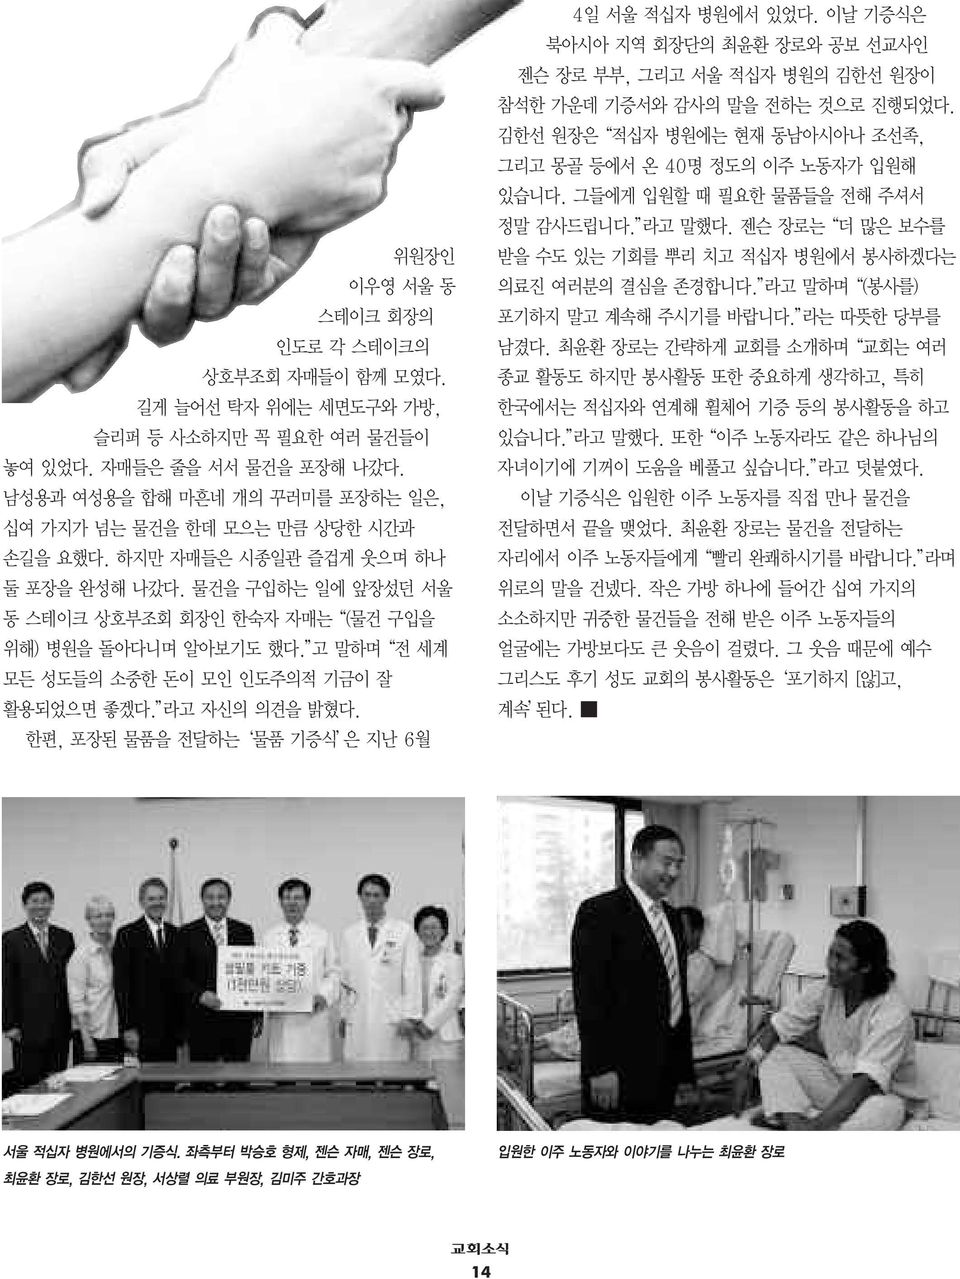 고 말하며 전 세계 모든 성도들의 소중한 돈이 모인 인도주의적 기금이 잘 활용되었으면 좋겠다. 라고 자신의 의견을 밝혔다. 한편, 포장된 물품을 전달하는 물품 기증식 은지난6월 4일 서울 적십자 병원에서 있었다.